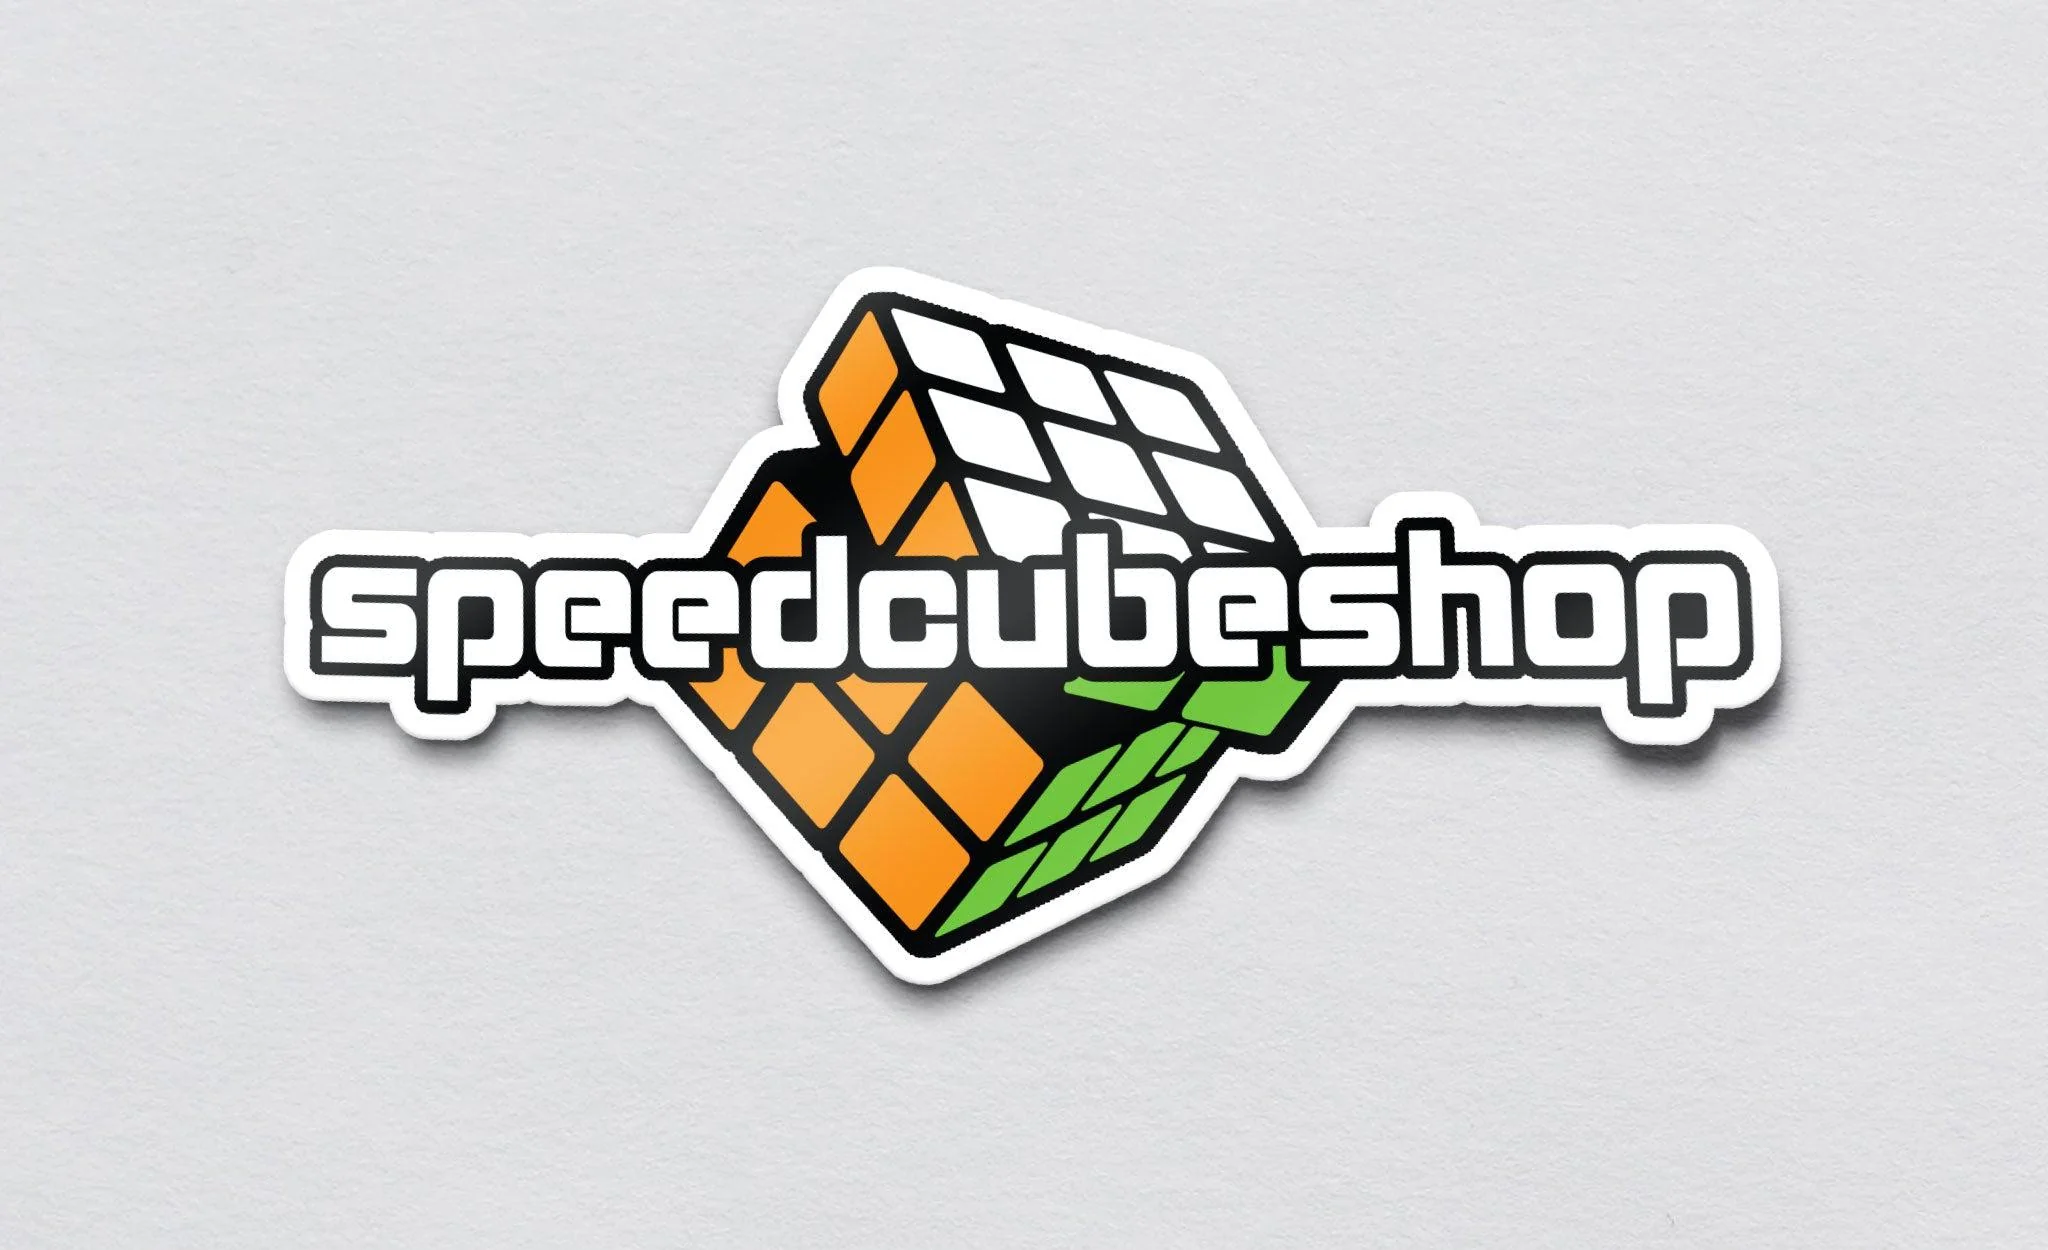 SpeedCubeShop